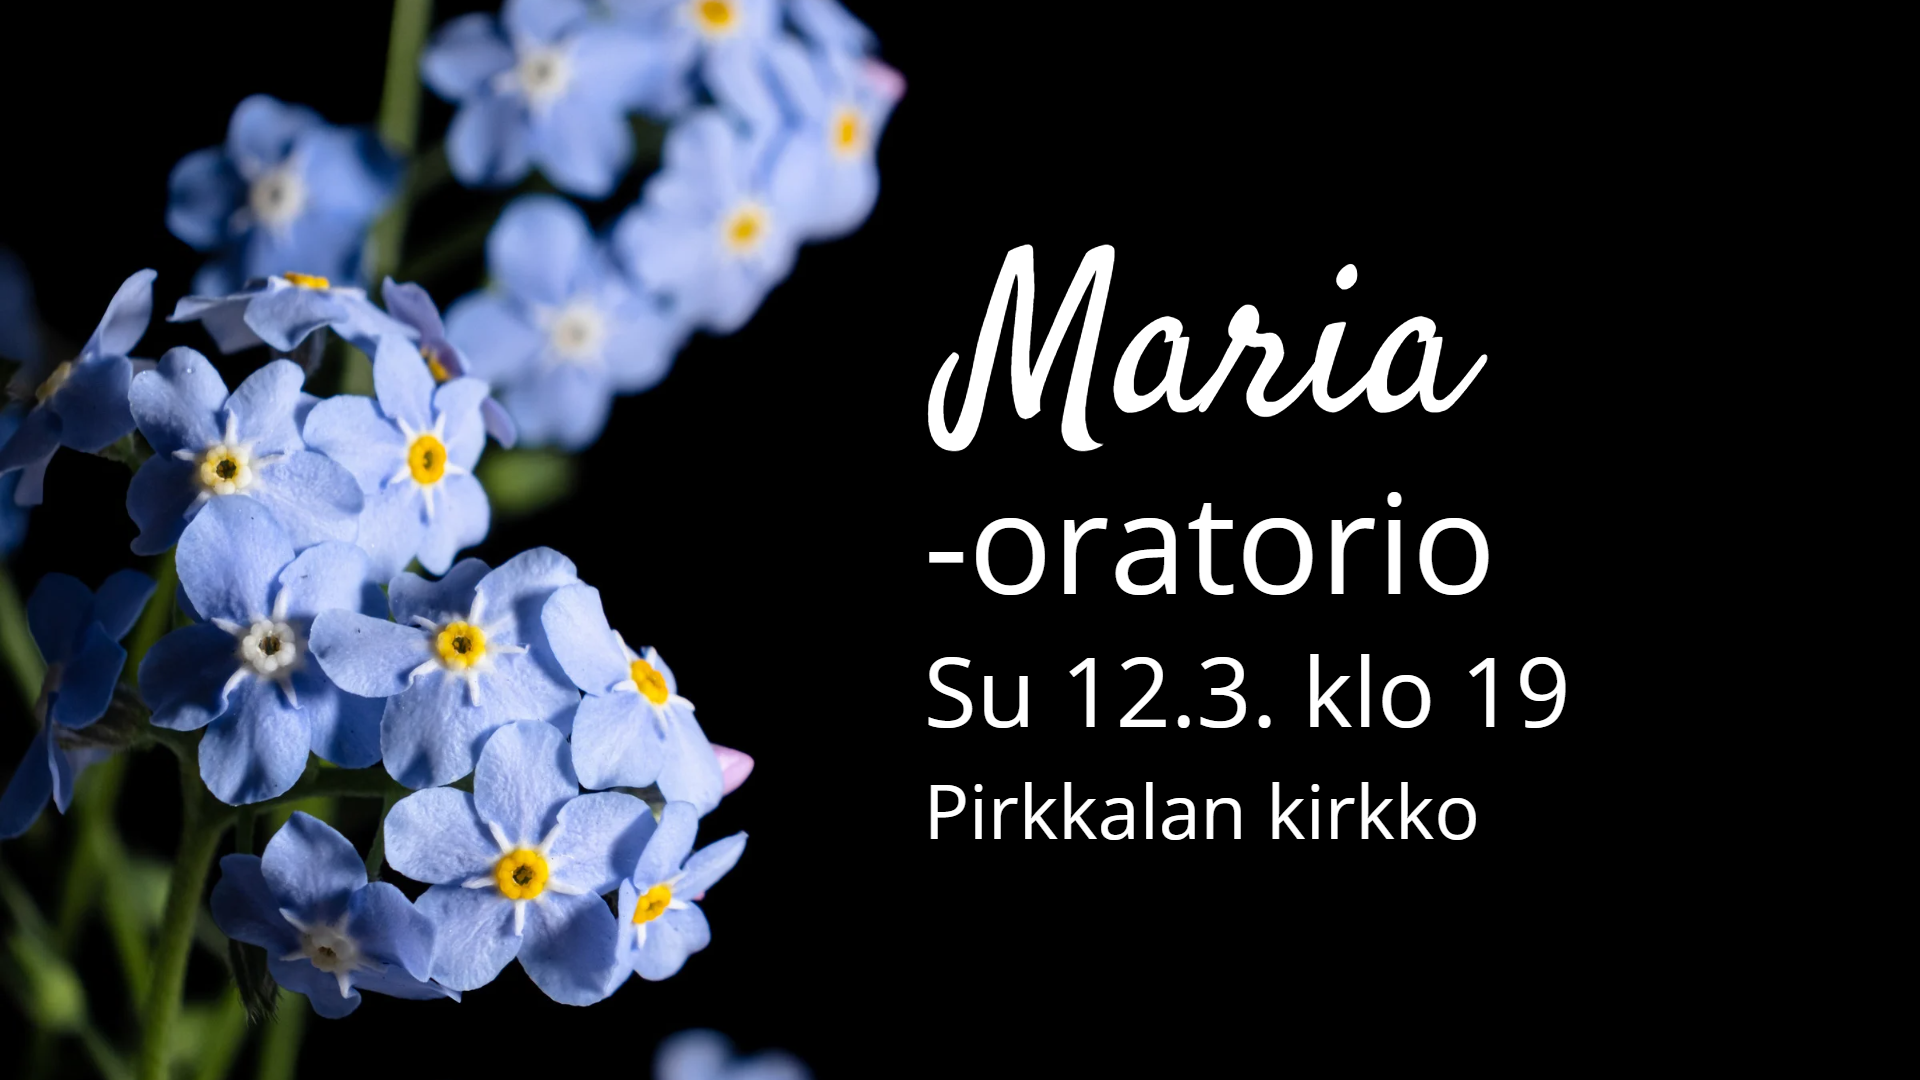 Maria-oratorioFBtapahtumakansi2.png